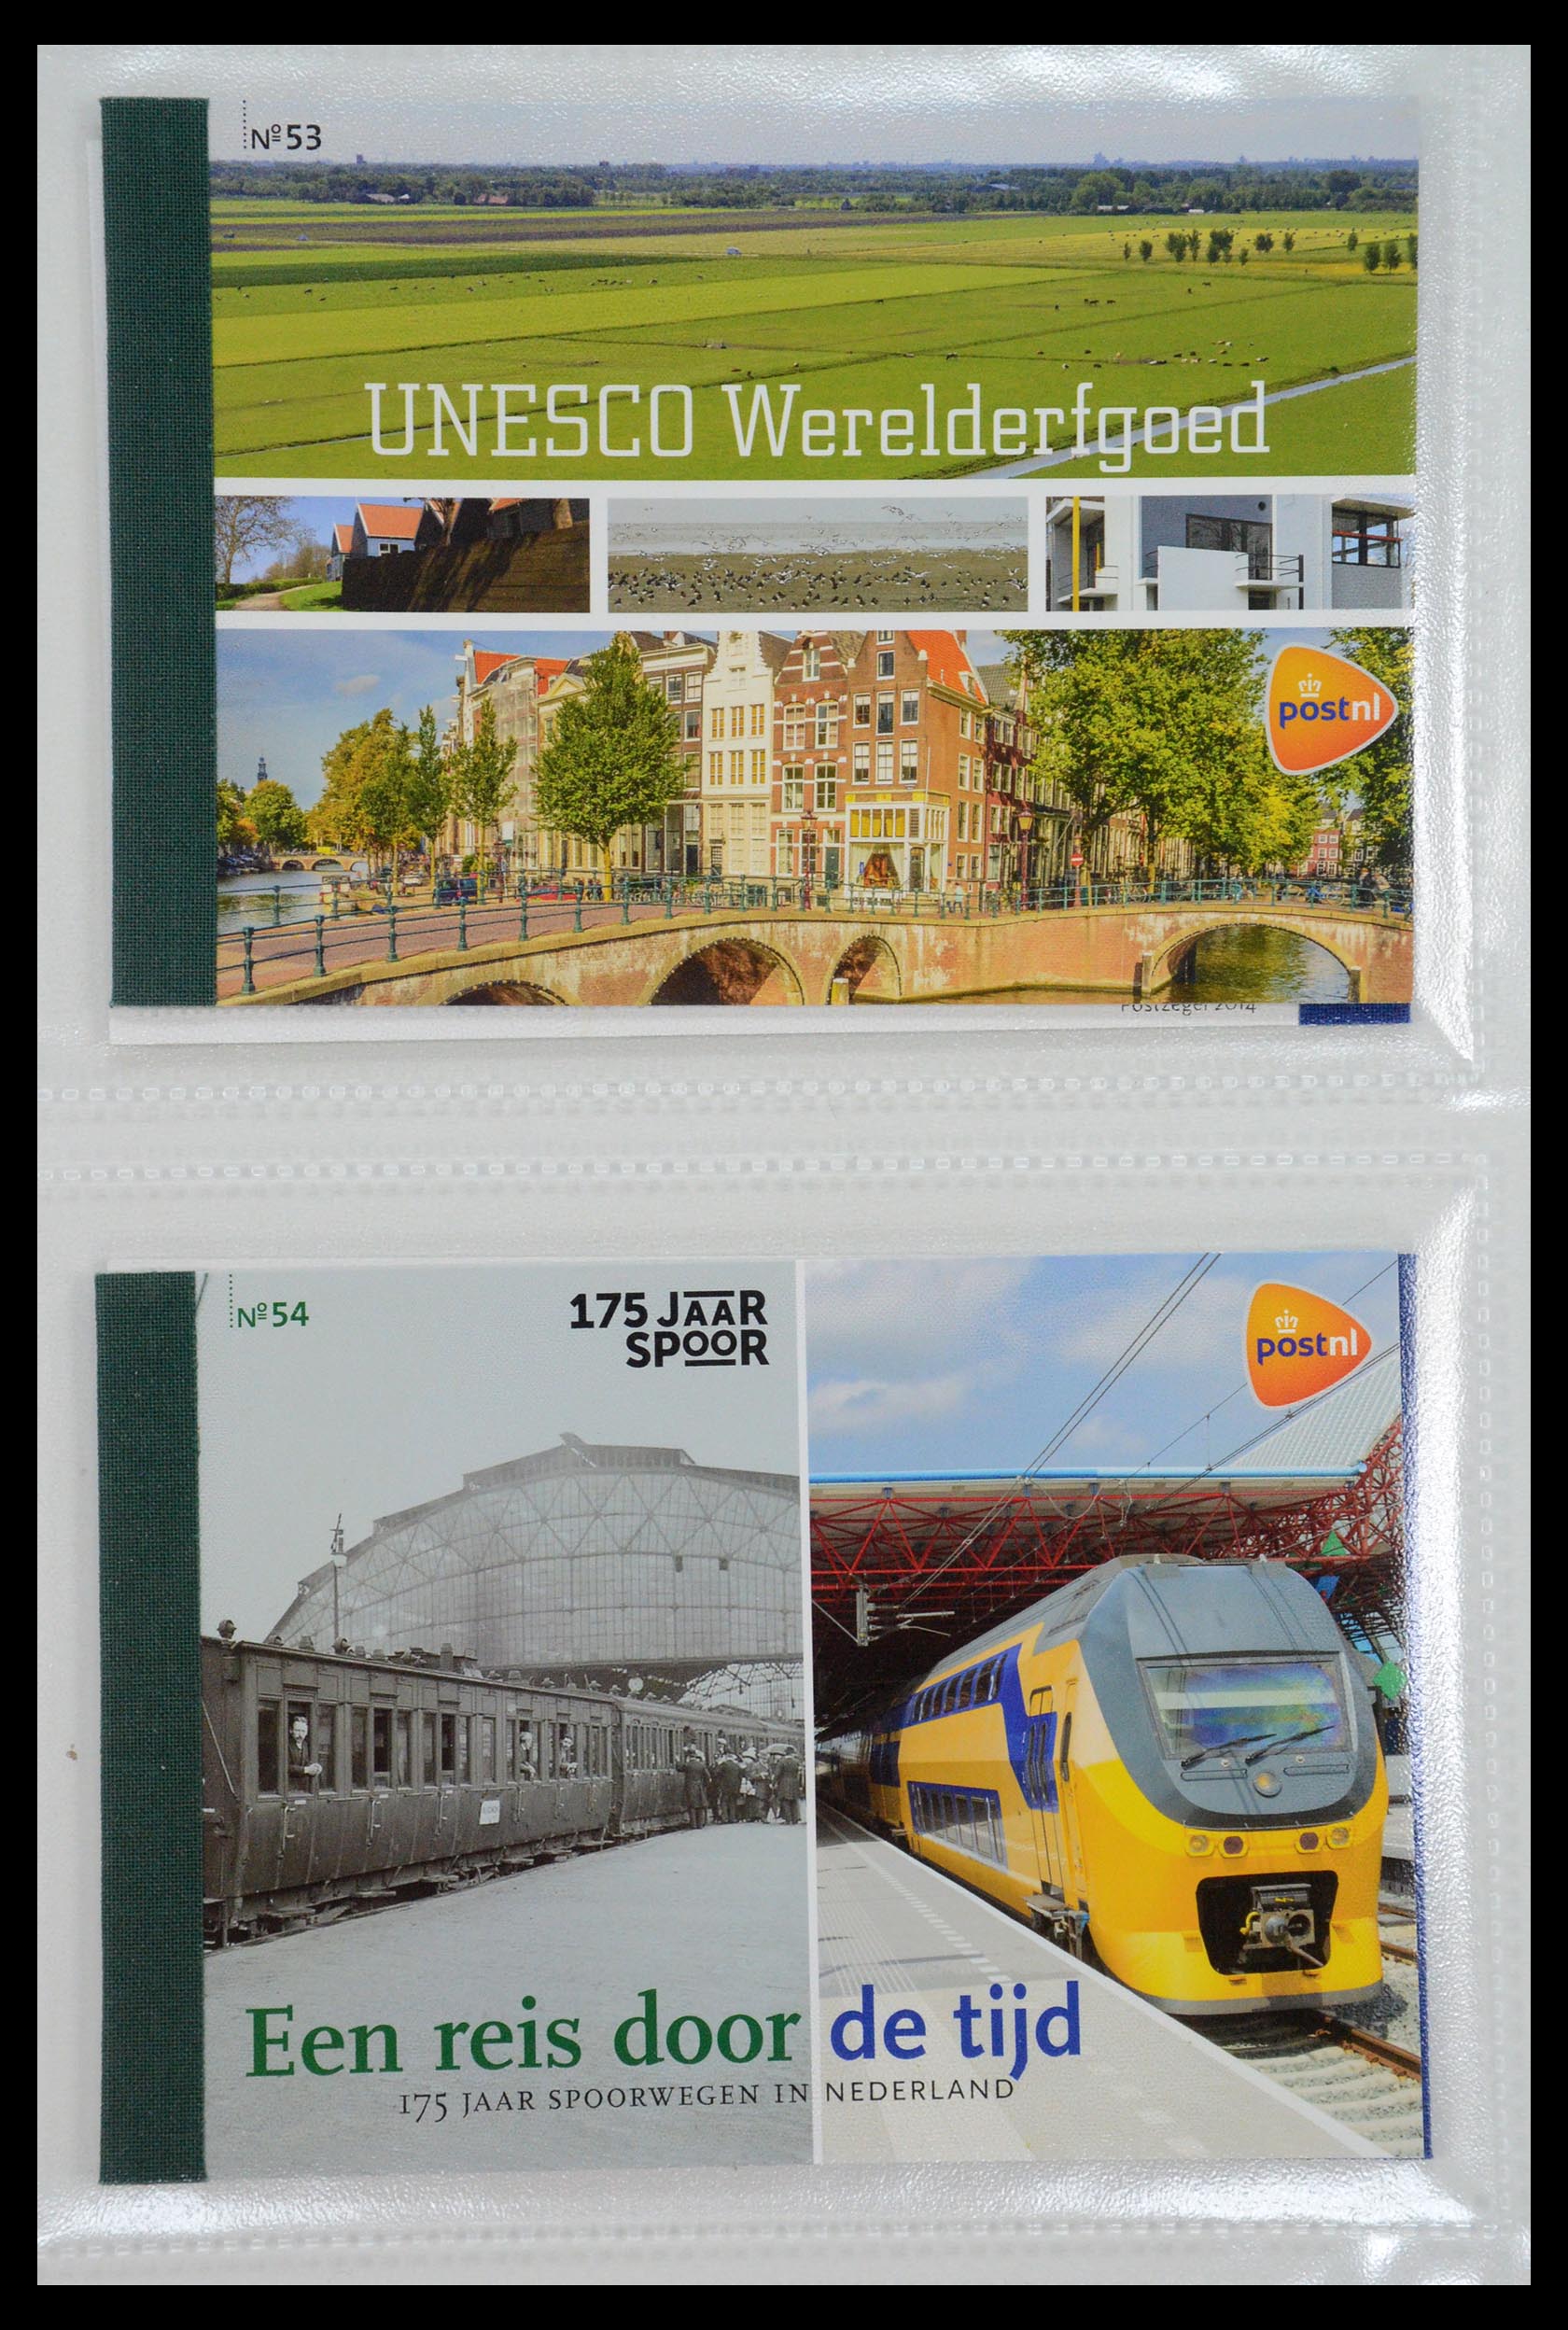 35148 027 - Stamp Collection 35148 Netherlands prestige booklets 2003-2019.